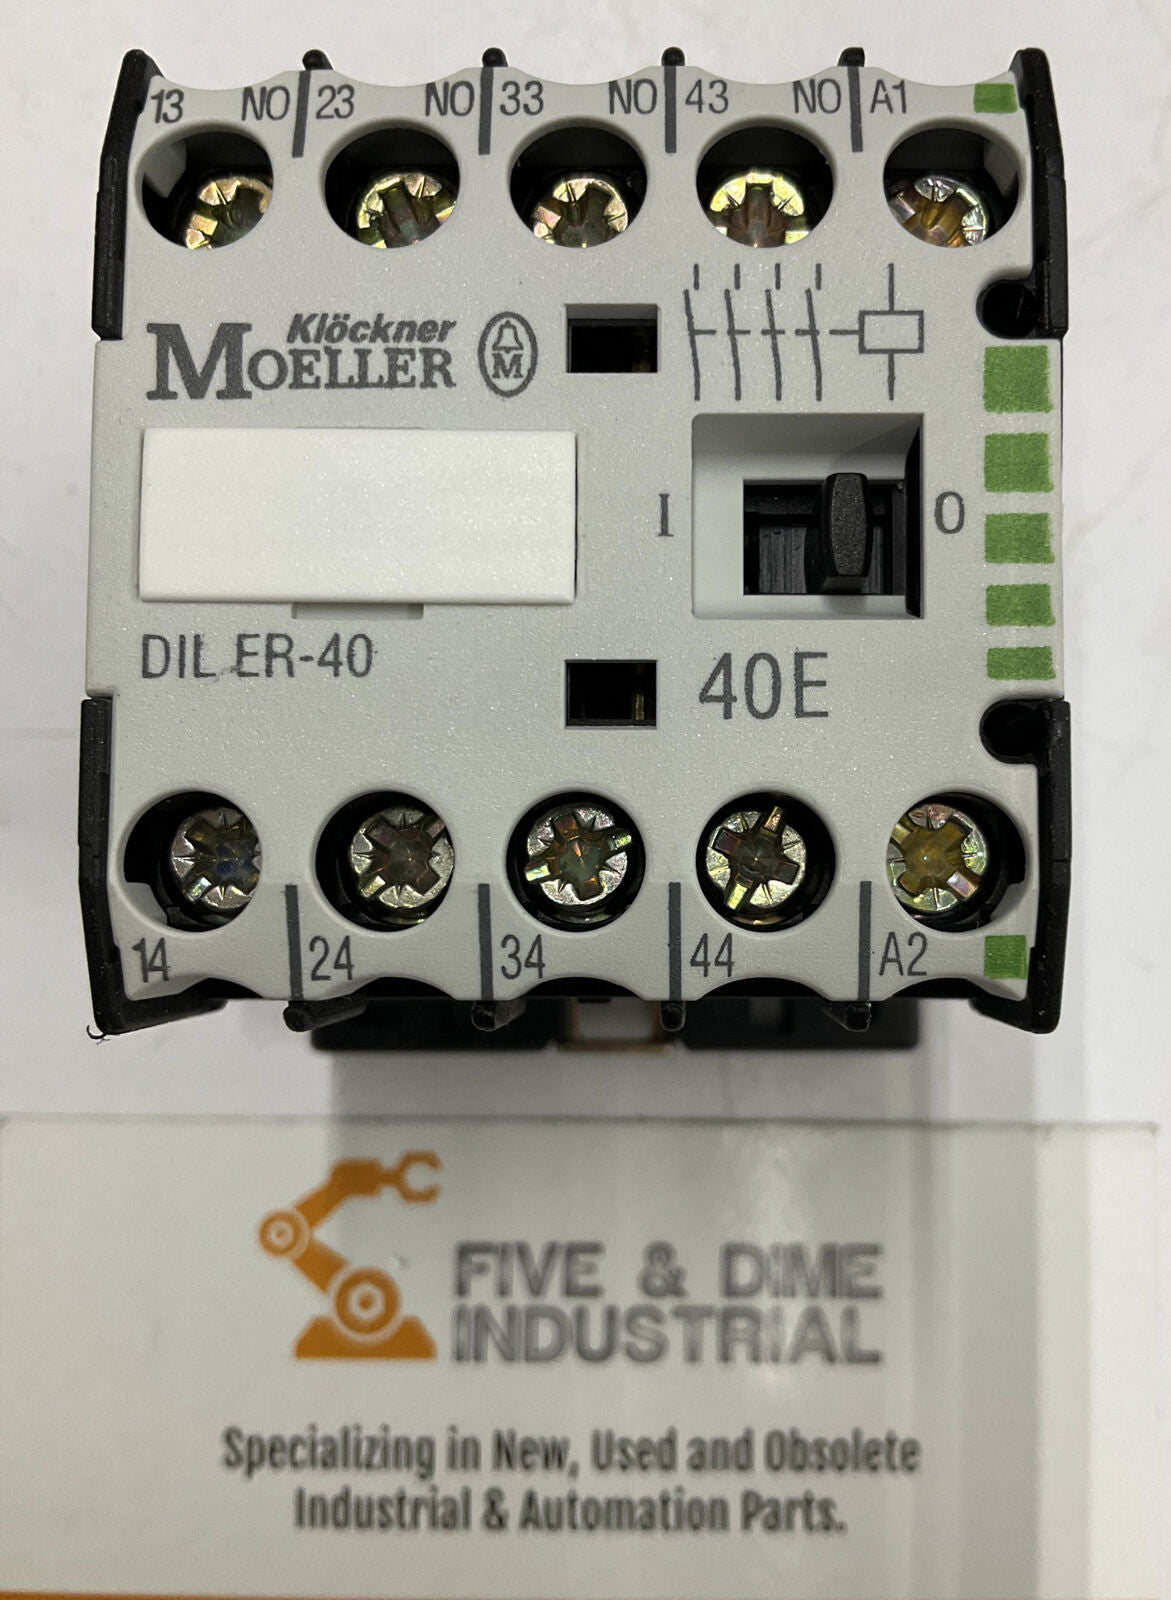 Moeller Diler 40 24VAC Contactor Relay (BL193) - 0